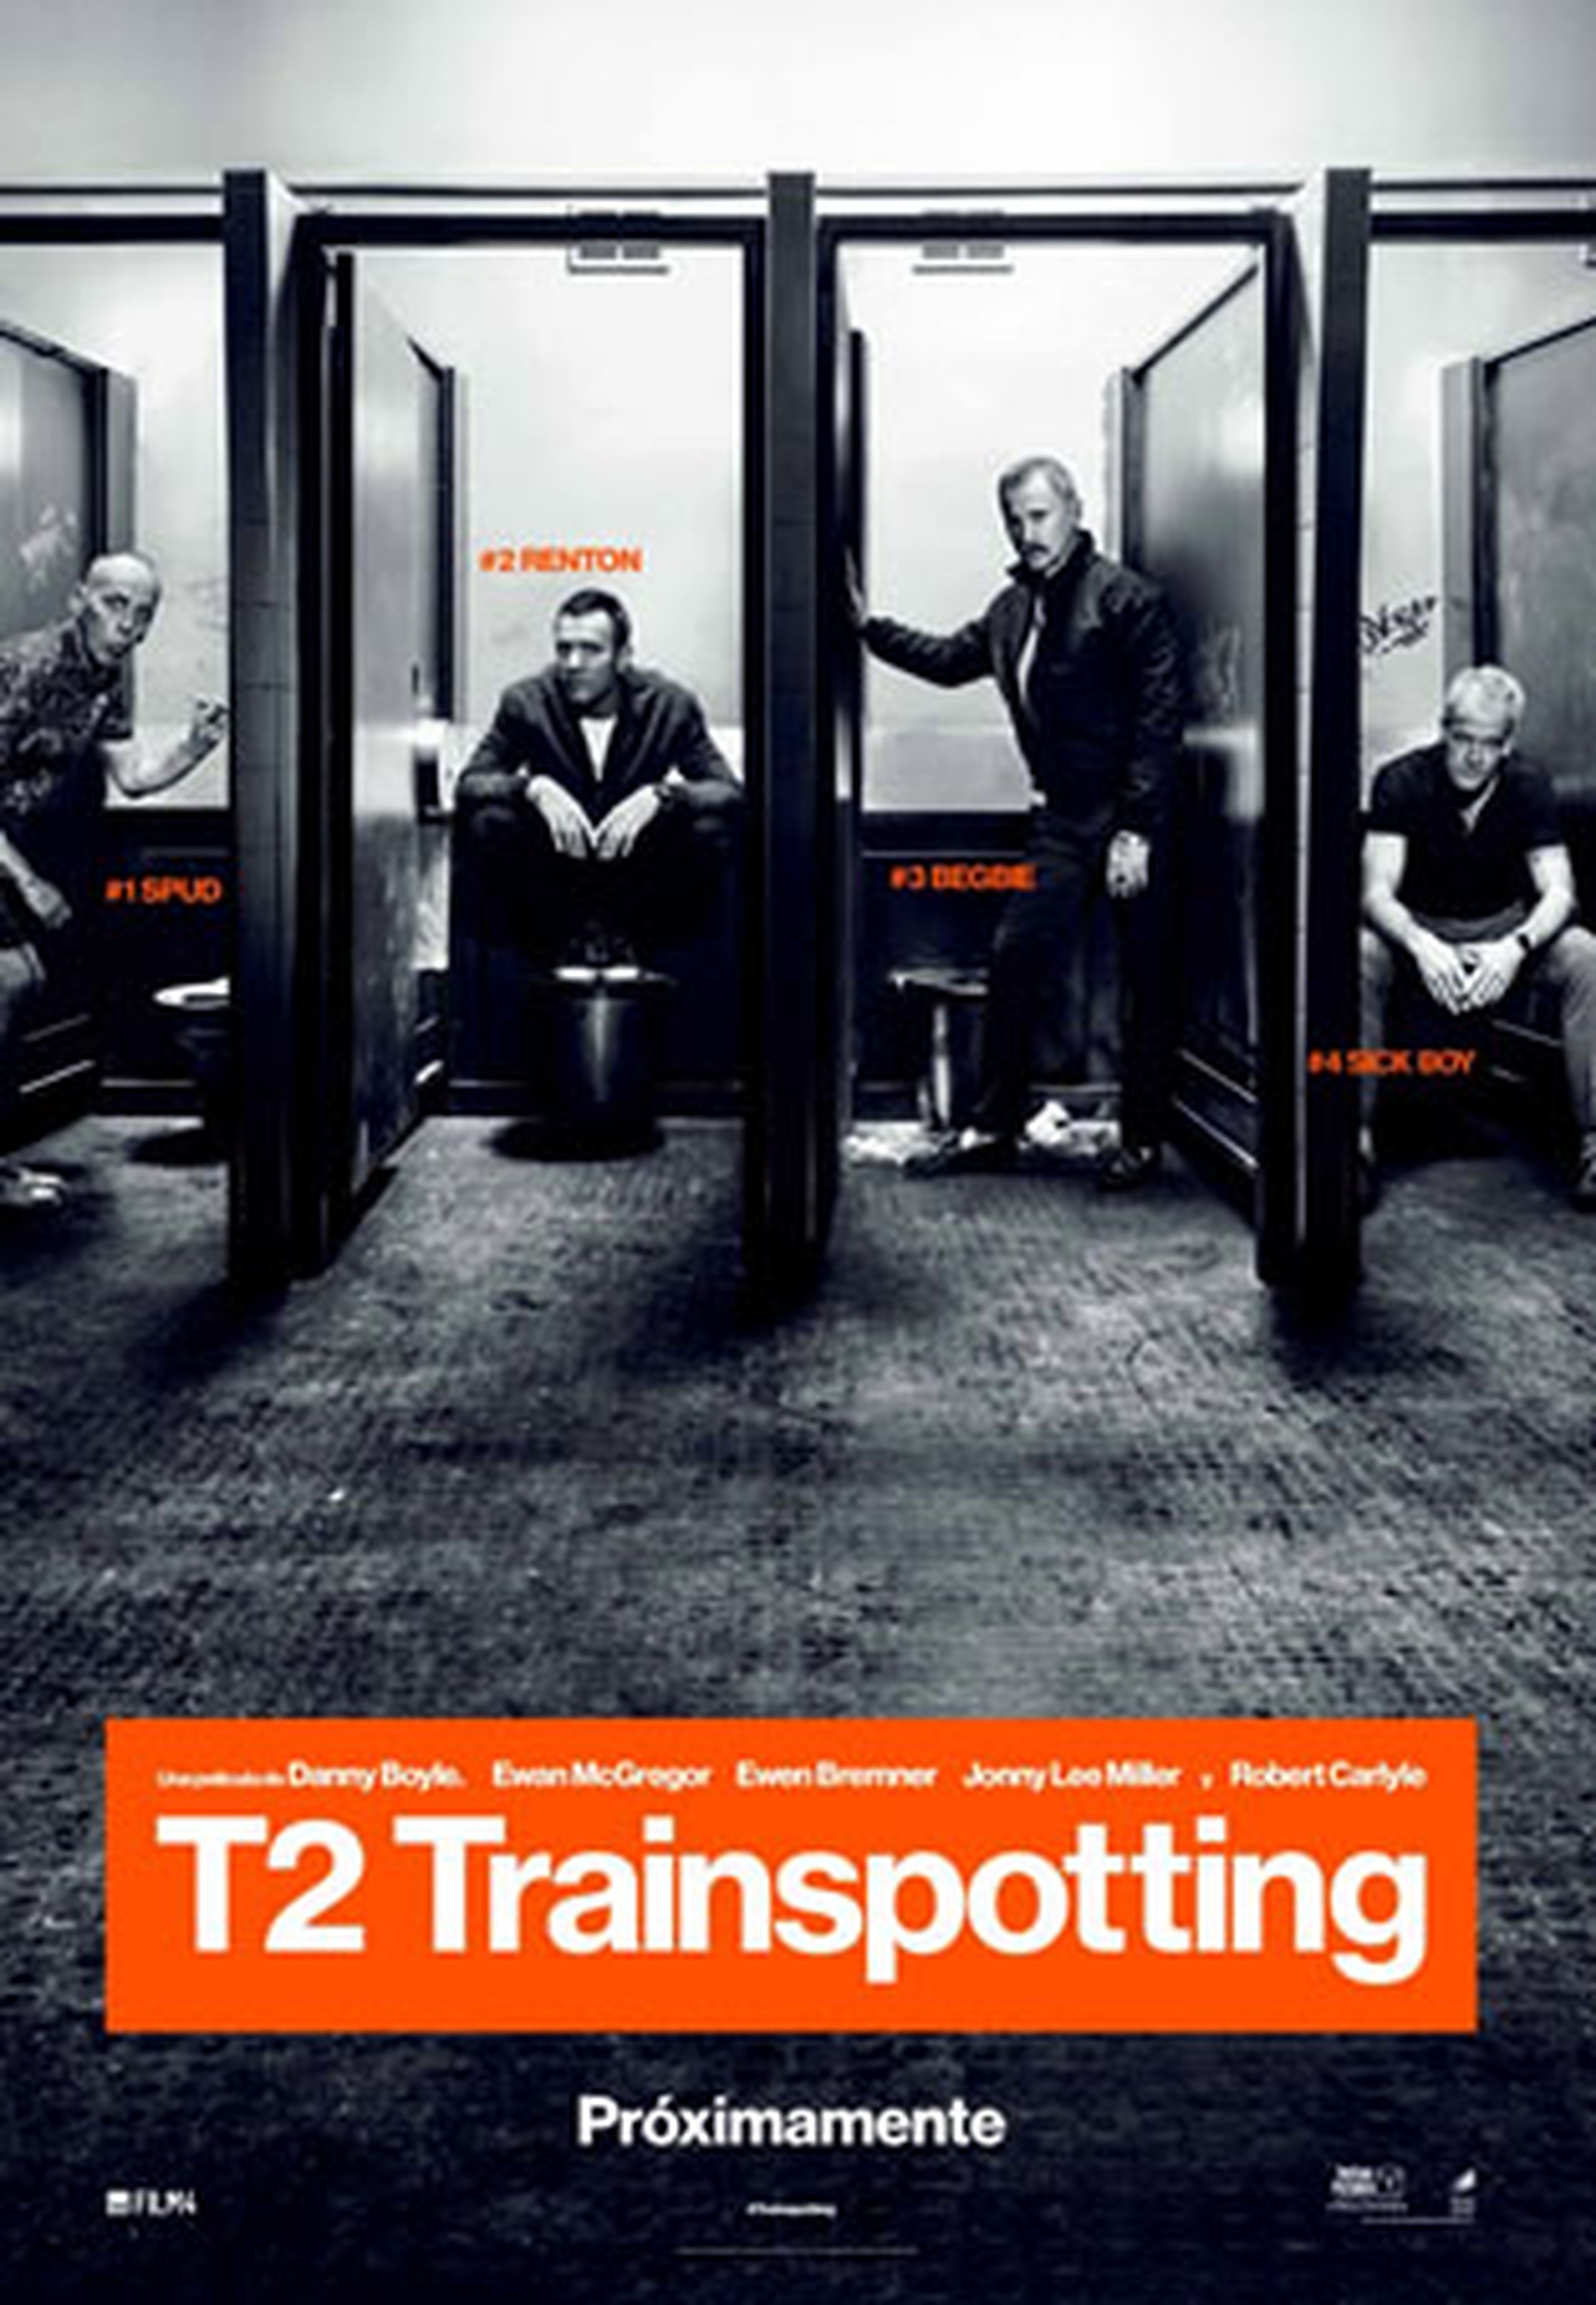 T2: Trainspotting - Teaser póster de la esperada secuela